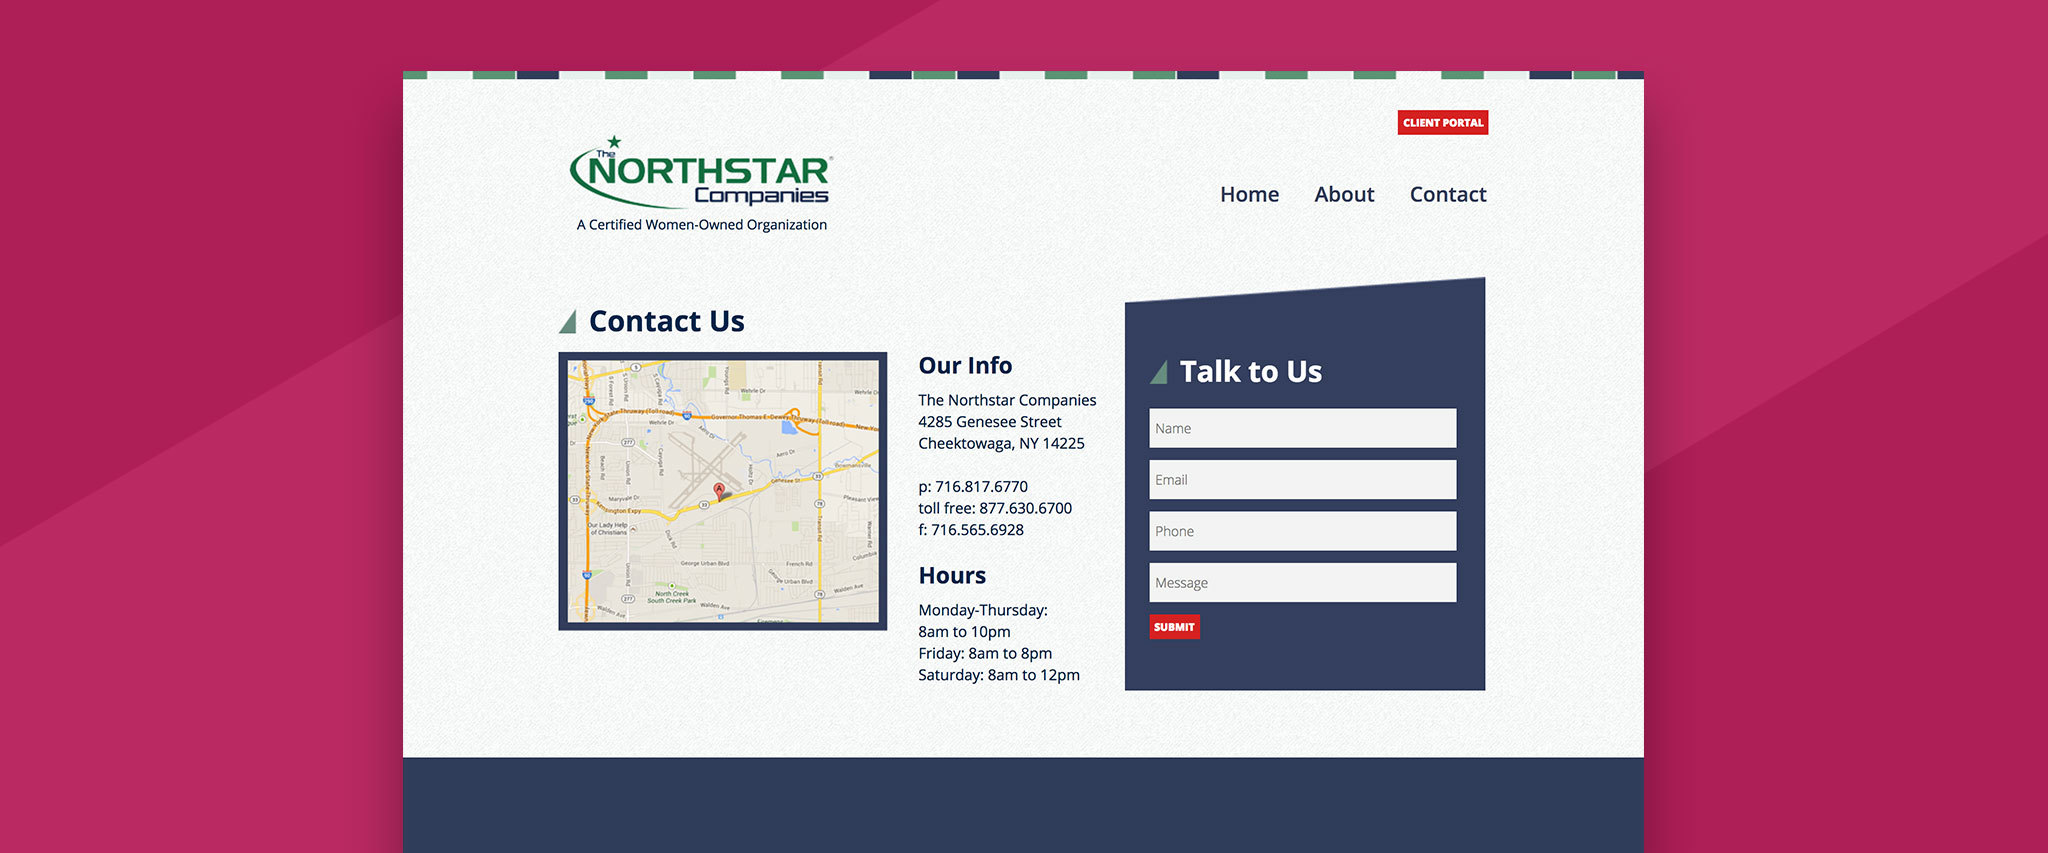 Northstar Companies Gallery